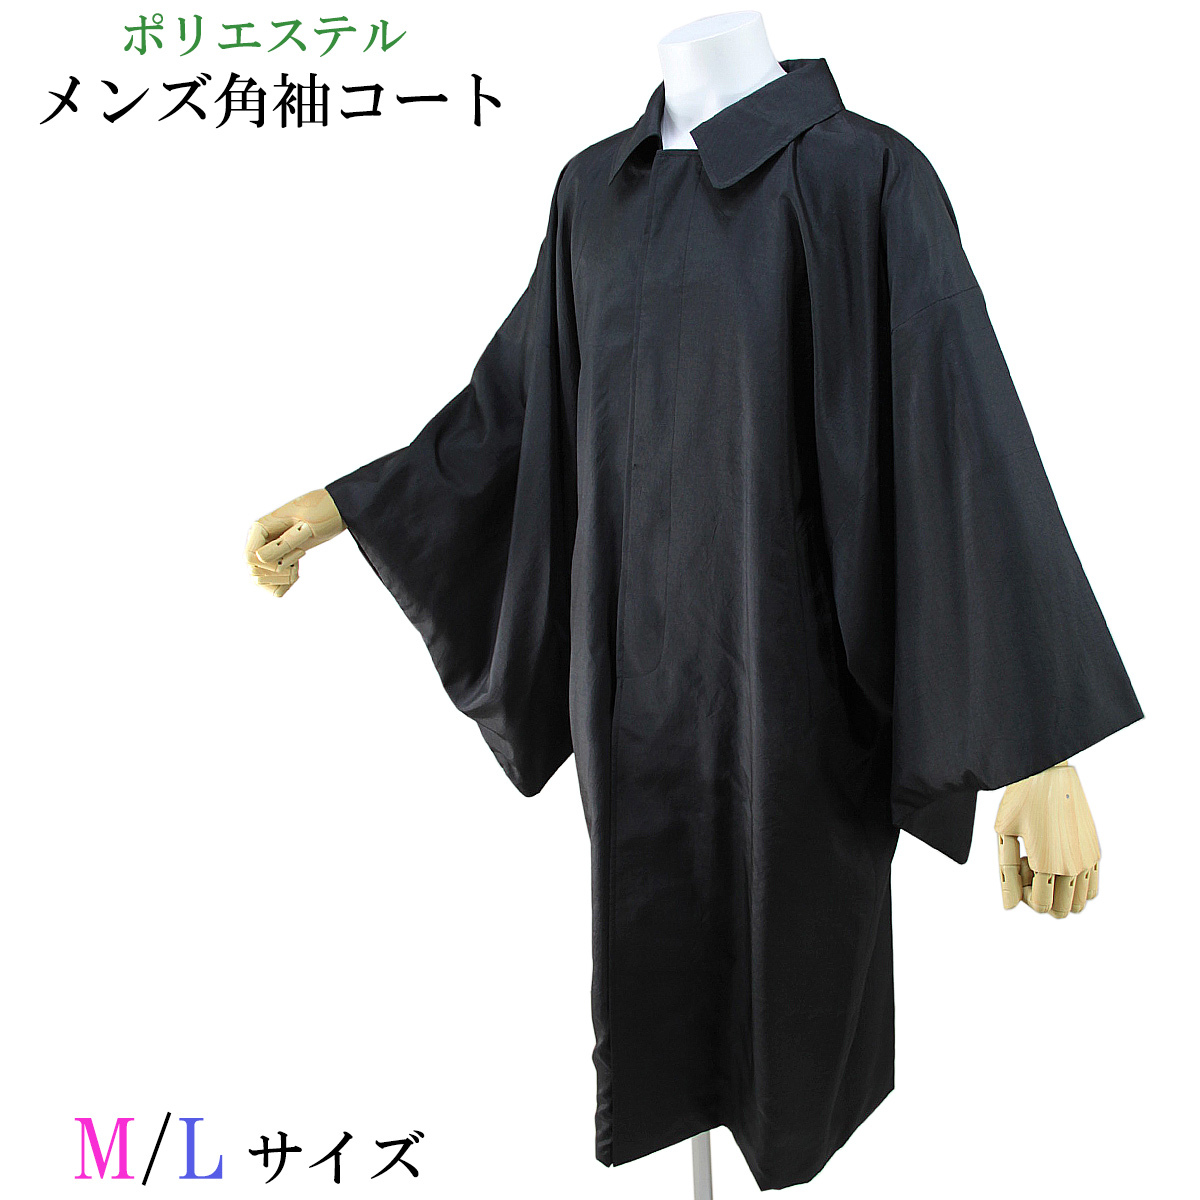  угол рукав пальто мужской японский костюм пальто полиэстер 100% черный M/L-size